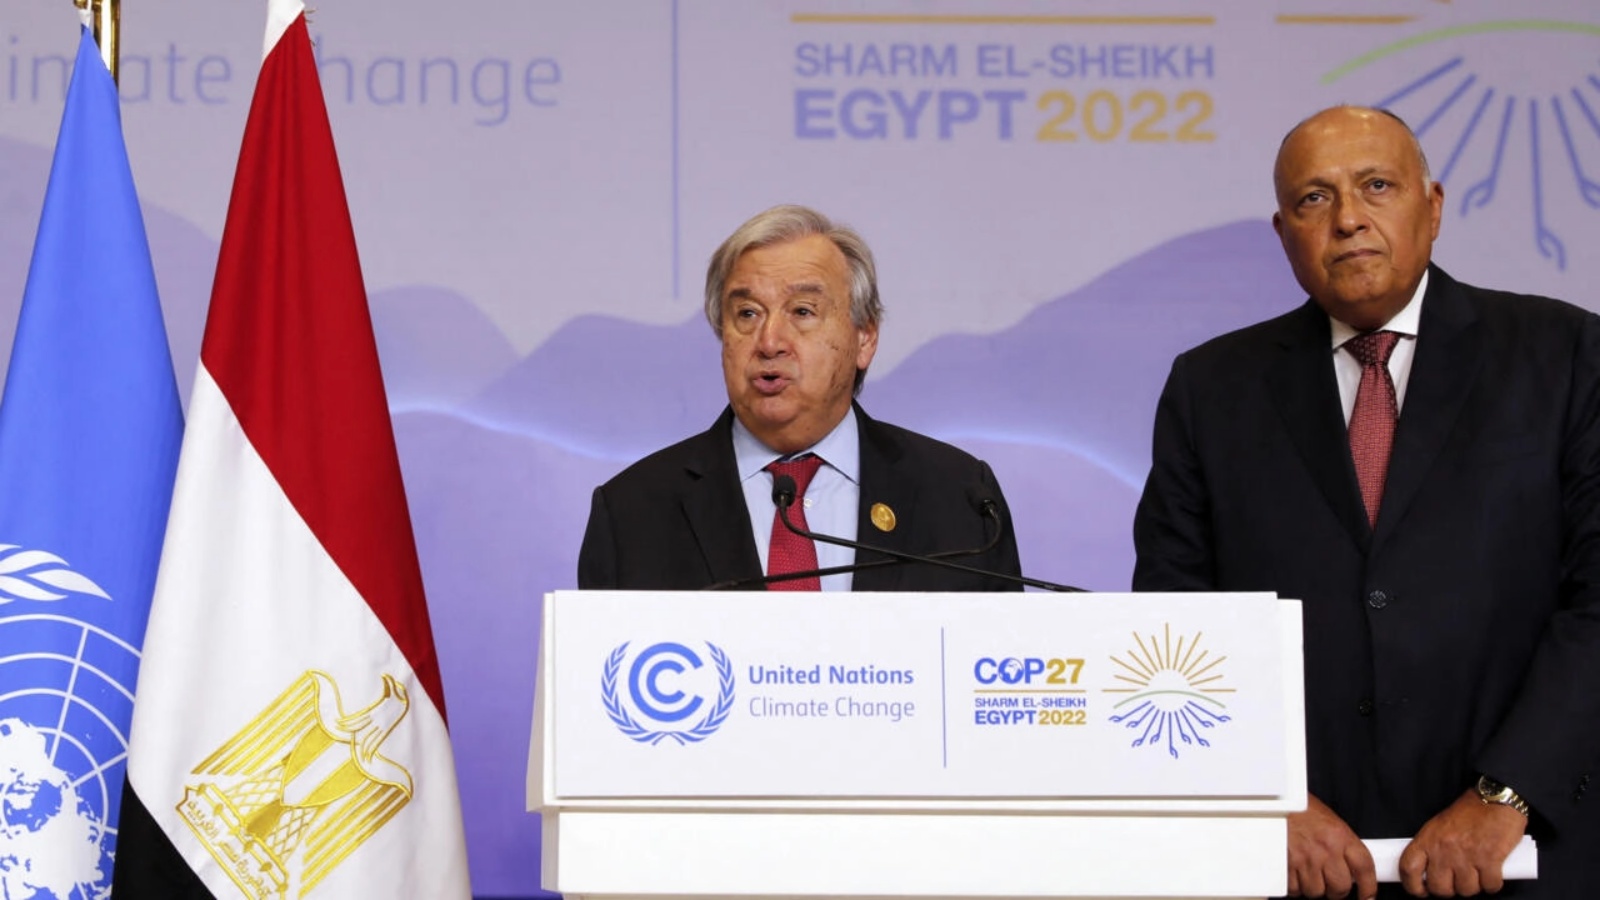 وزير الخارجية المصري سامح شكري والأمين العام للأمم المتحدة أنطونيو غوتيريش، في مؤتمر صحفي خلال مؤتمر المناخ في شرم الشيخ على البحر الأحمر، في 17 نوفمبر 2022